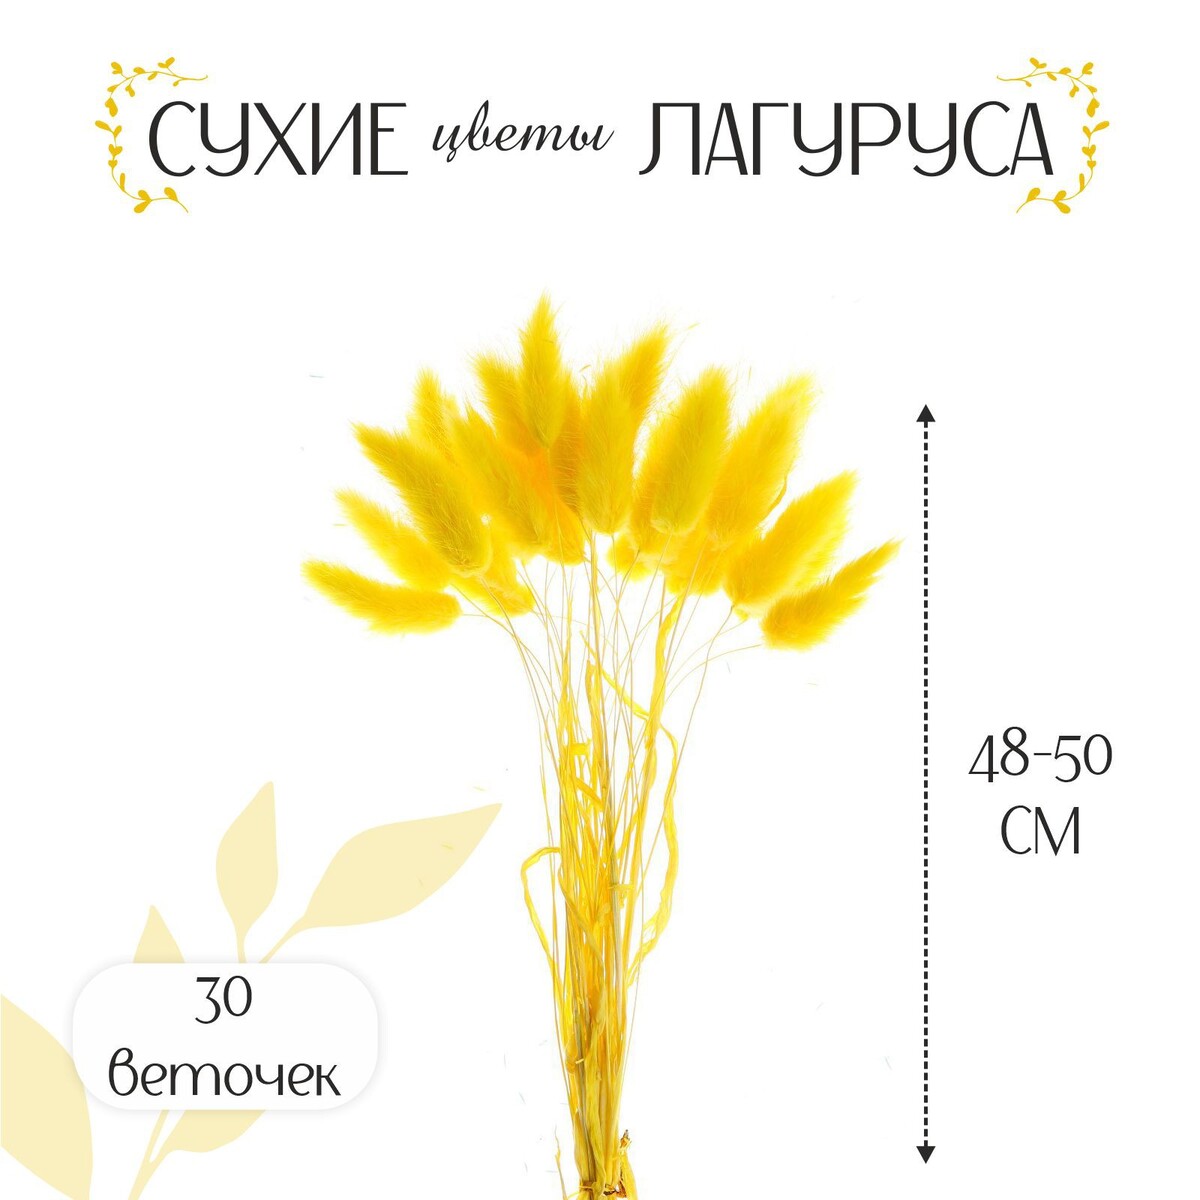 Сухие цветы лагуруса, набор 30 шт., цвет желтый